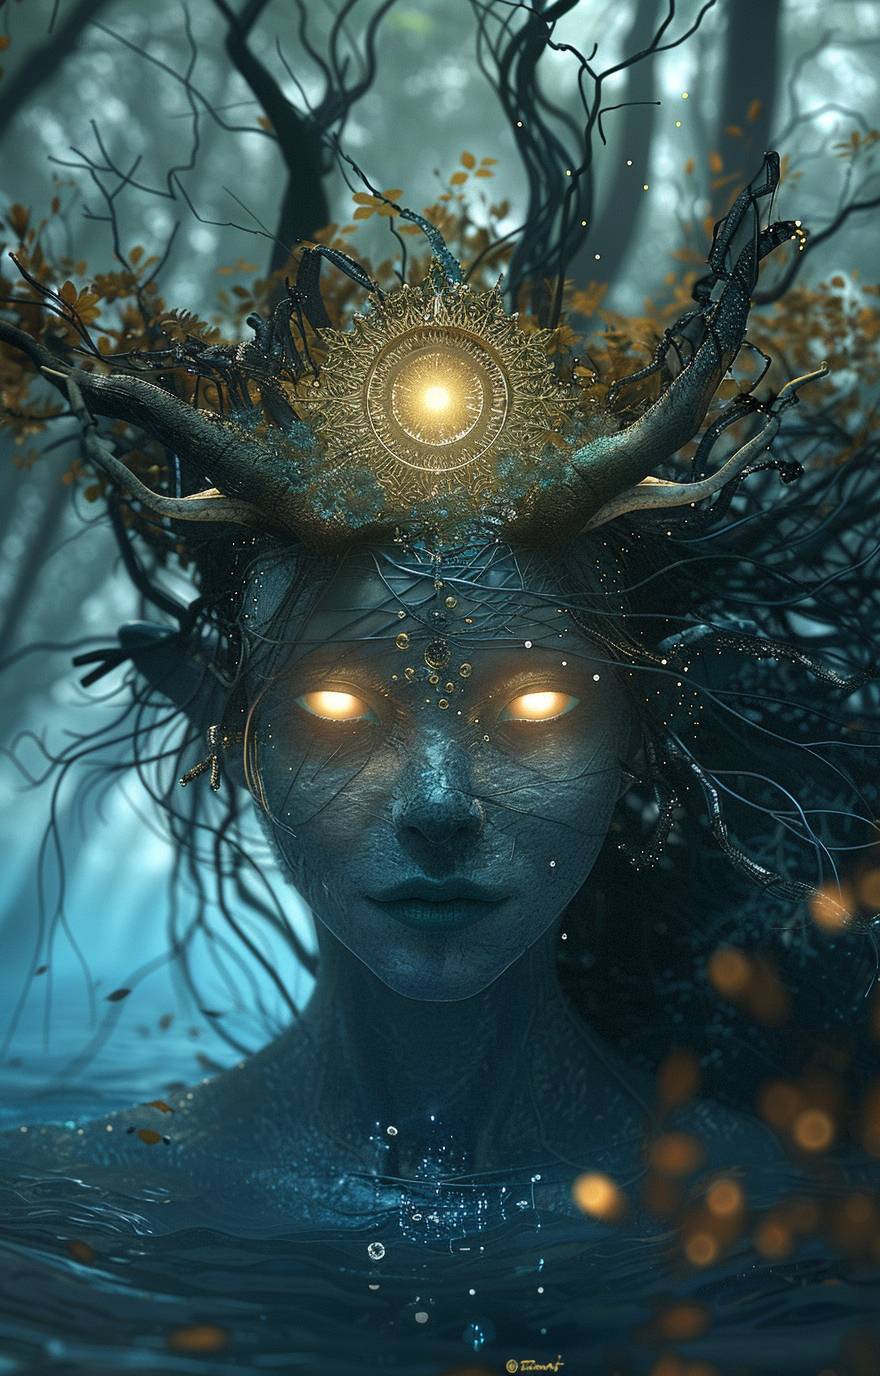 輝く黄色の目とつるのような髪を持つ青い宇宙人の女性が、頭の前で太陽のような形をした精巧な金の王冠を着用しています。彼女の額の両側には小さな黒い角が2つあり、デジタルアートスタイルで水の下に立ち、背後に木々が見えています。